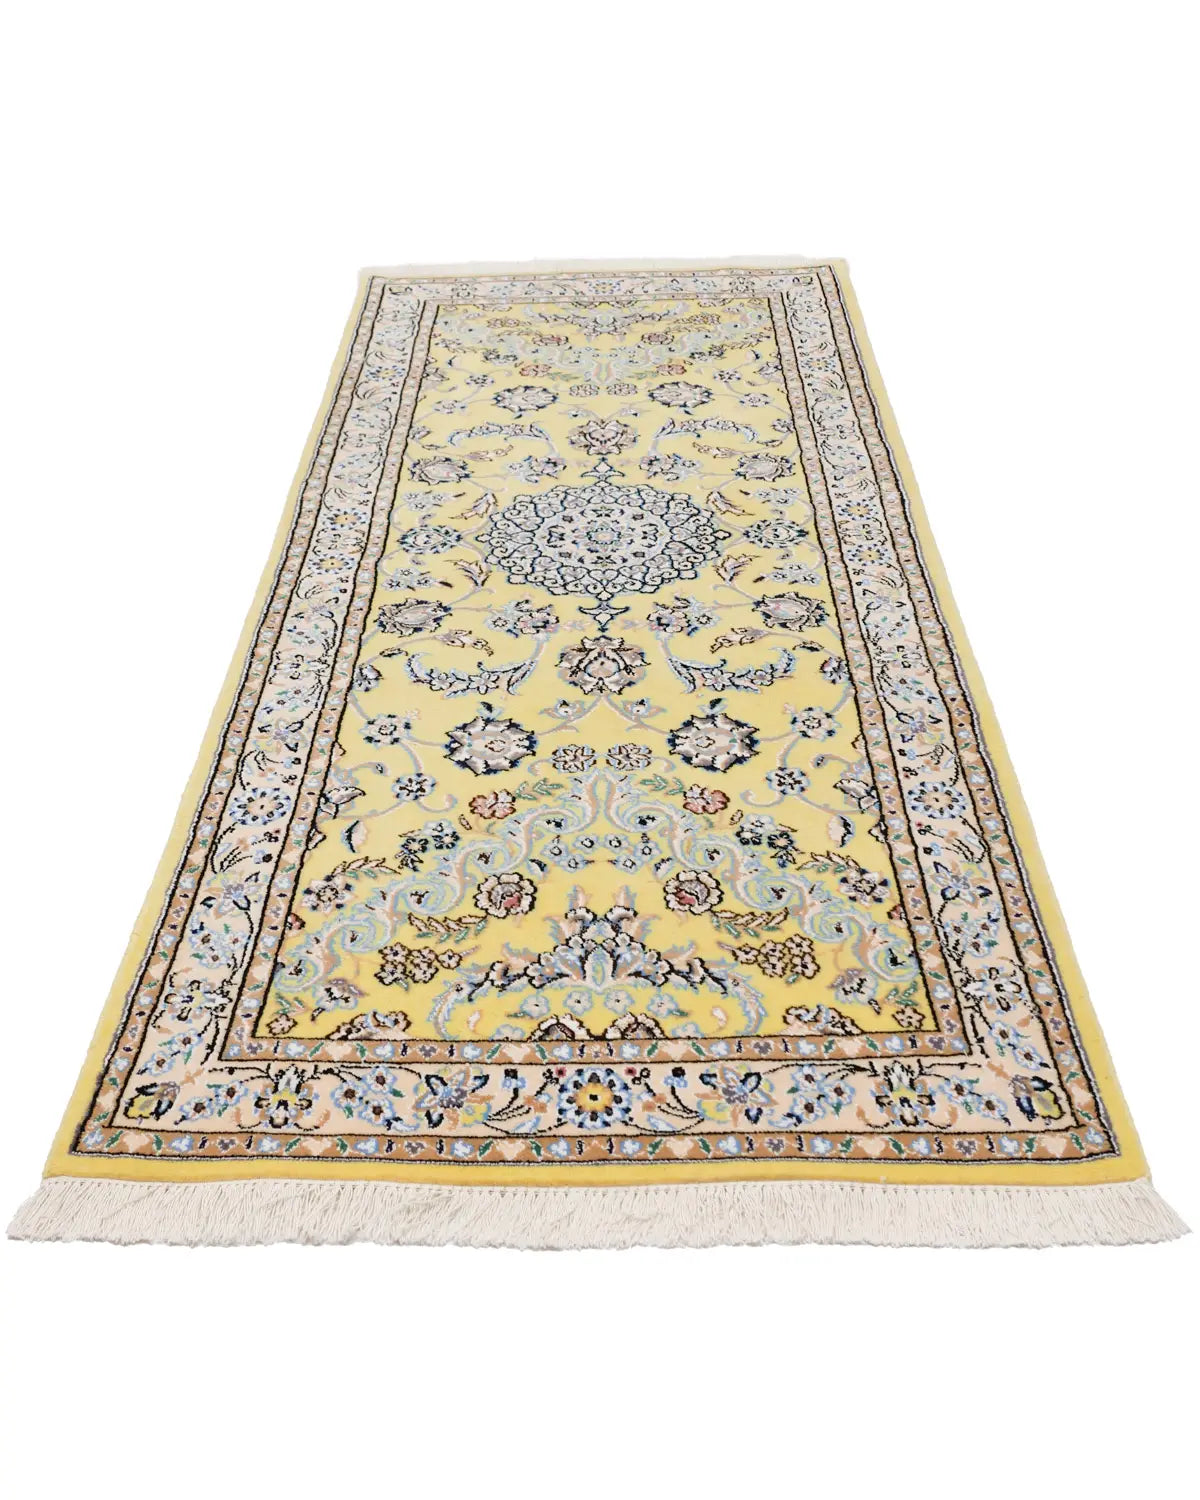 【NEW】ペルシャ絨毯 ナイン産 約80cm x 194cm